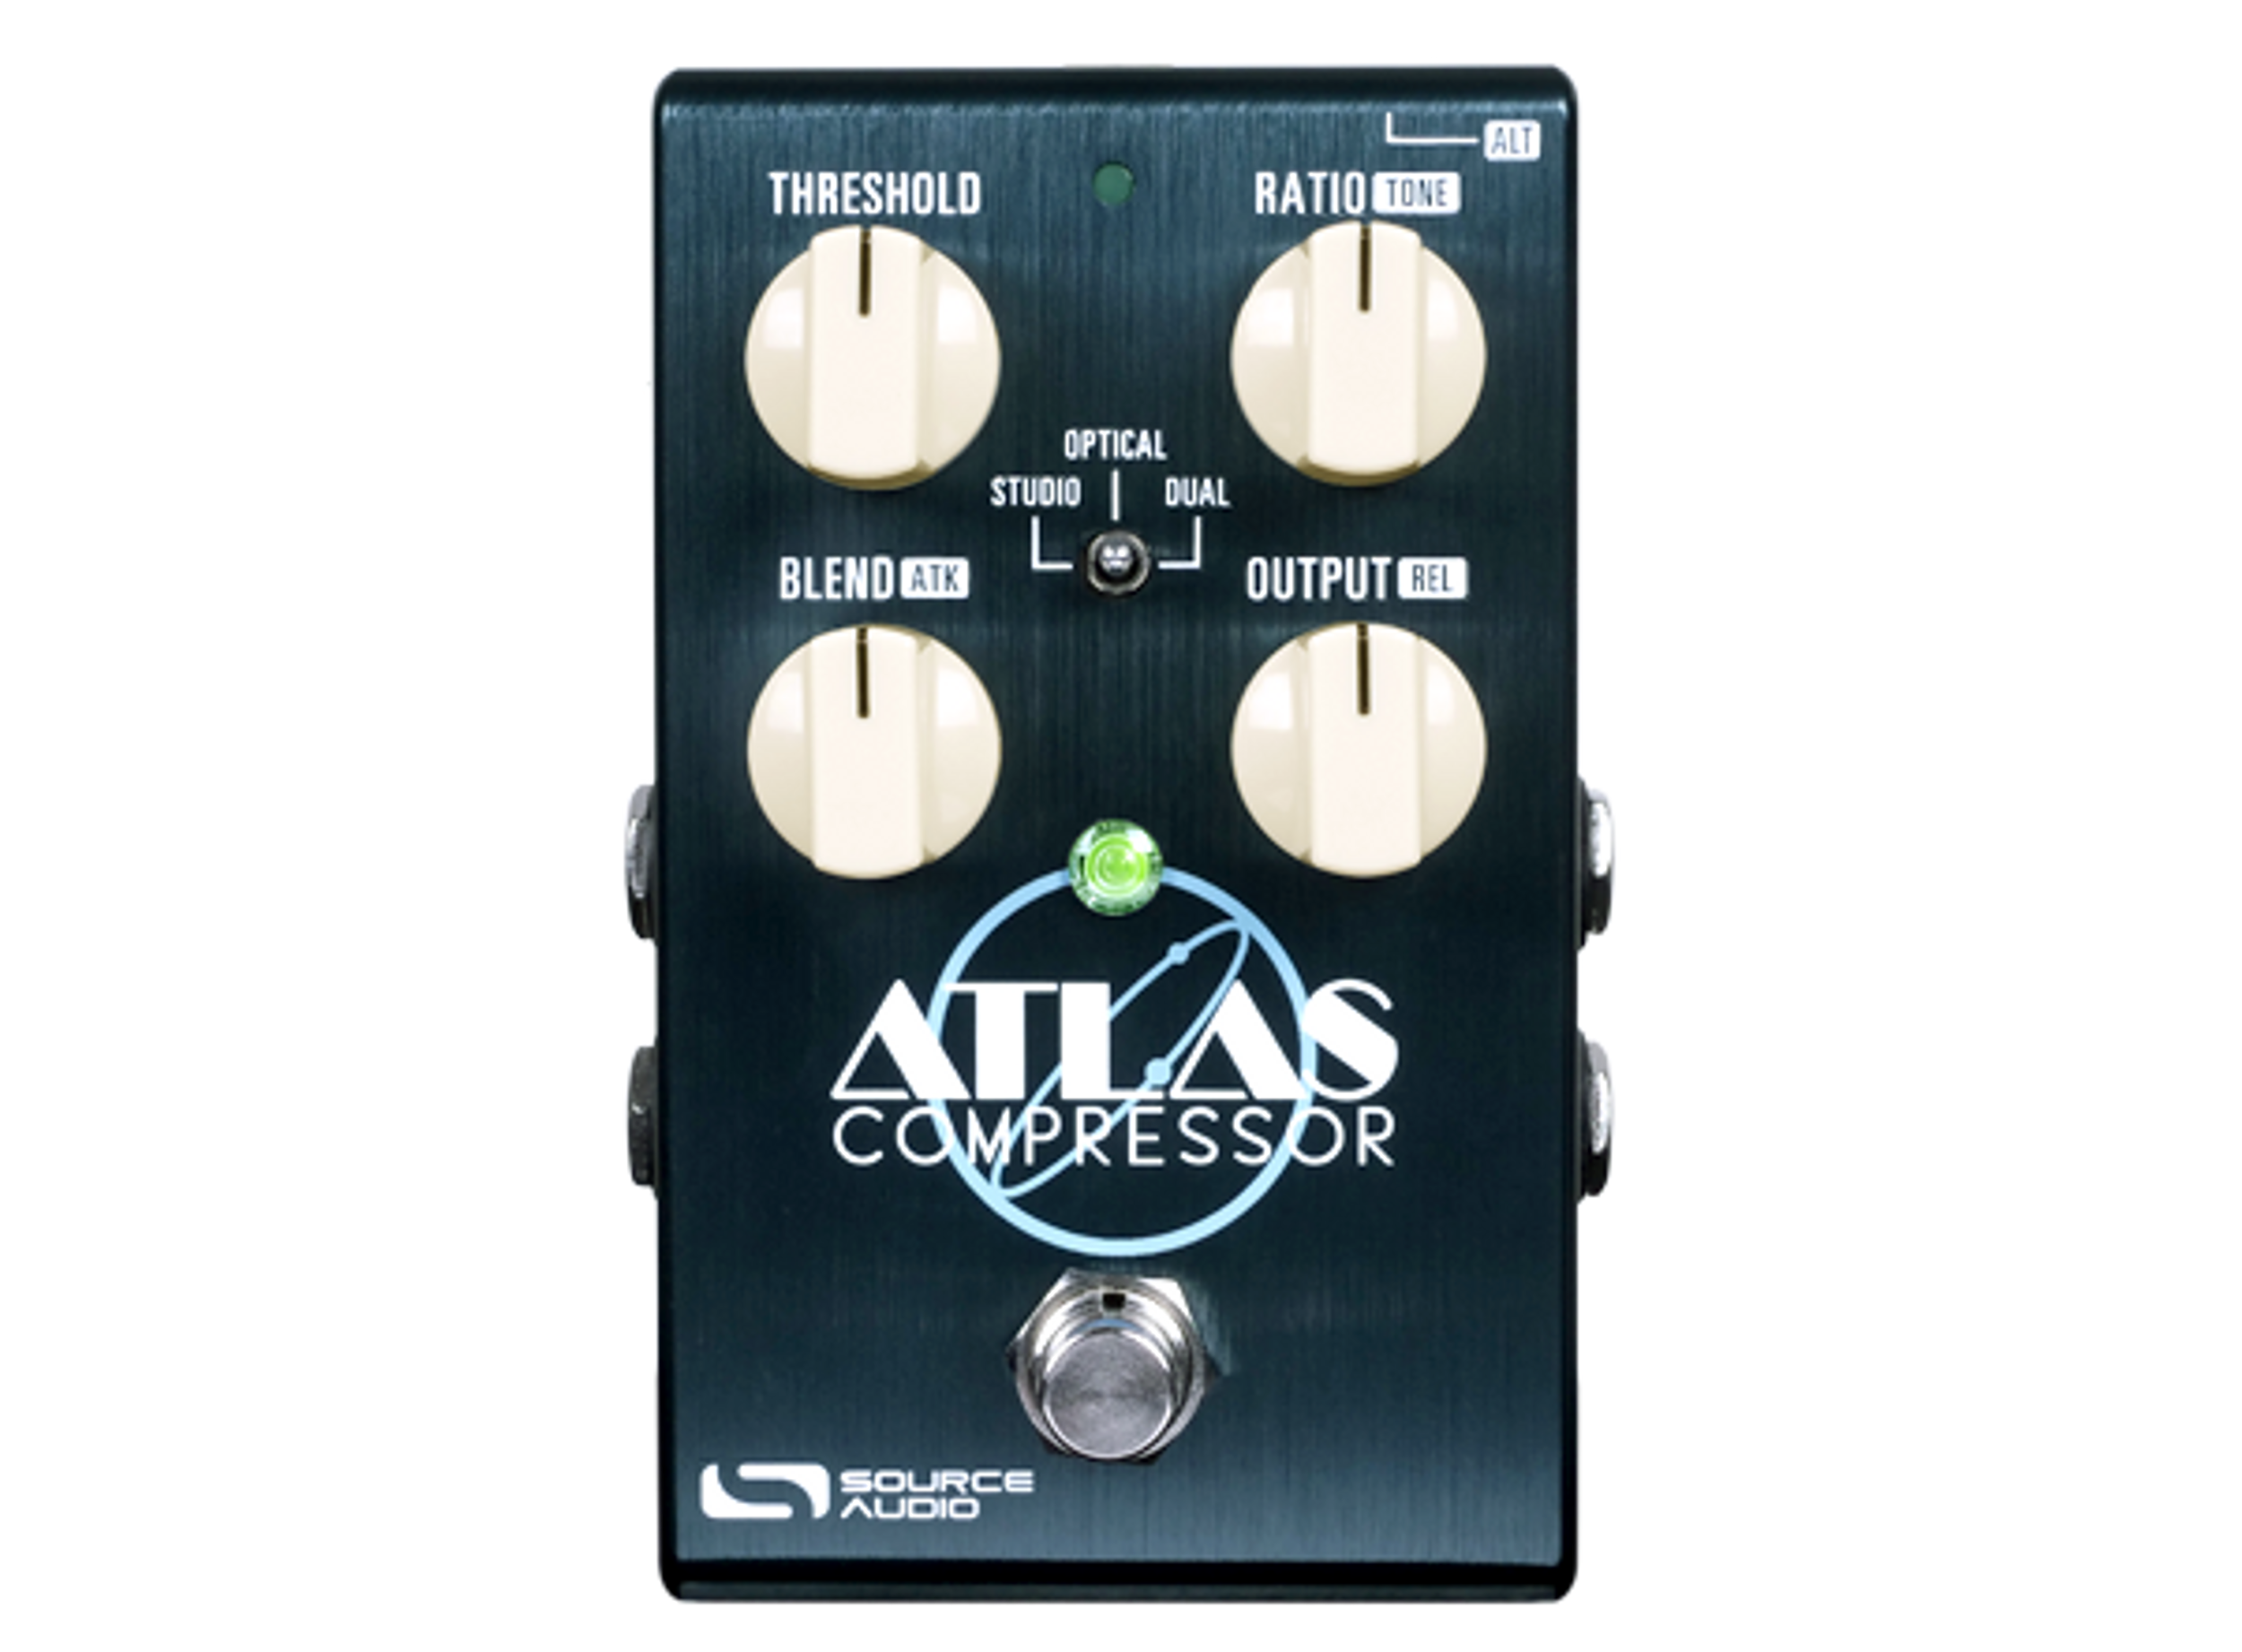 Source Audio Introduces the Atlas Compressor